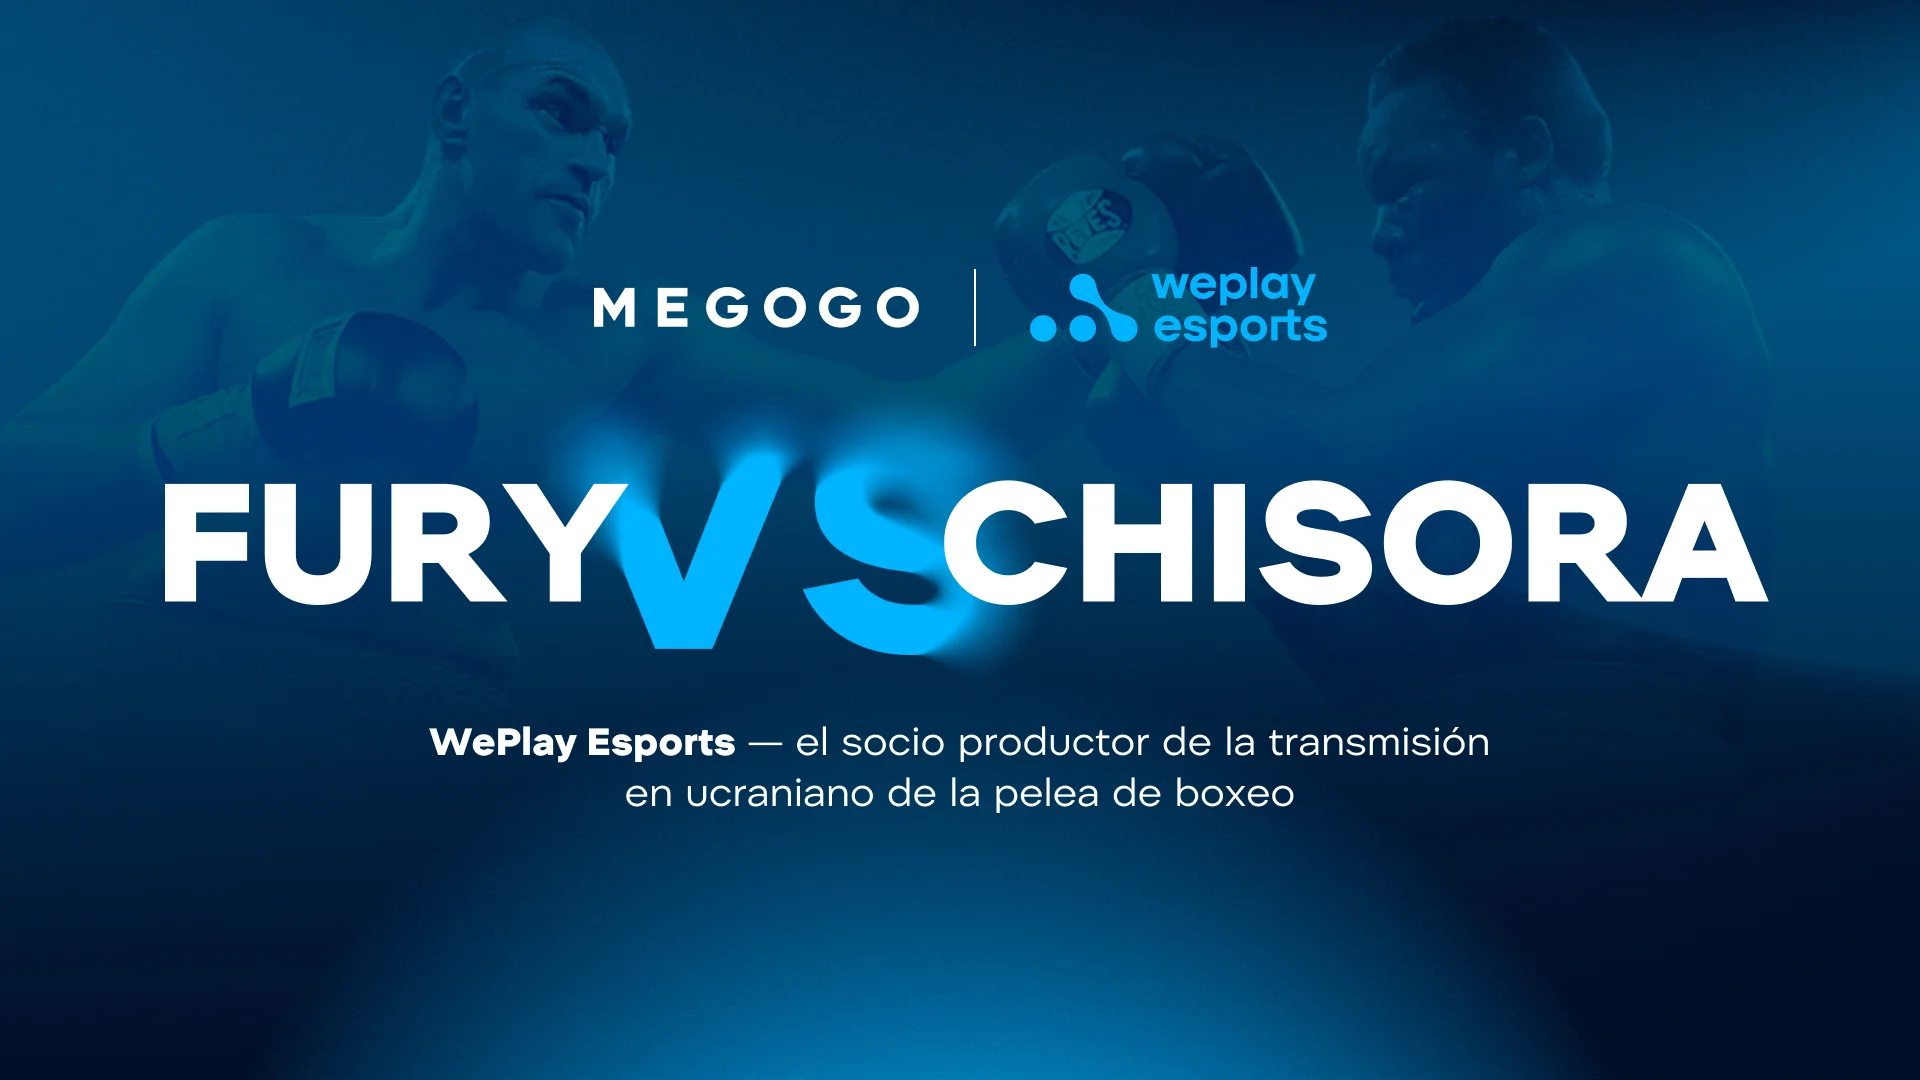 WePlay Esports es el socio productor de la transmisión en ucraniano de la pelea de boxeo Fury vs. Chisora ​​en MEGOGO. Imagen: WePlay Holding